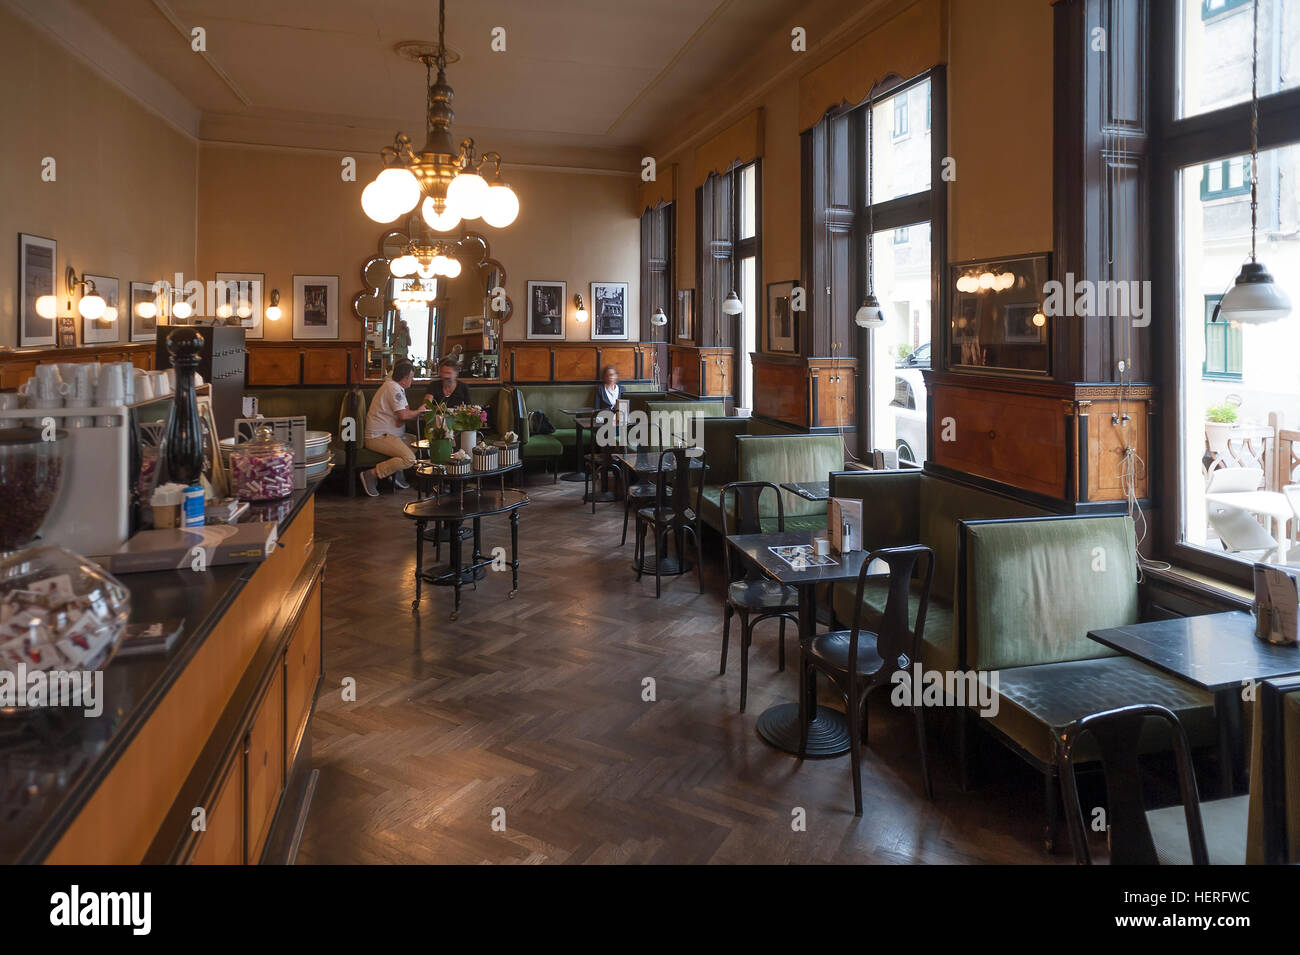 Goldegg Café, café viennois, ouvert en 1910, Argentinierstraße 49, Vienne, Autriche Banque D'Images